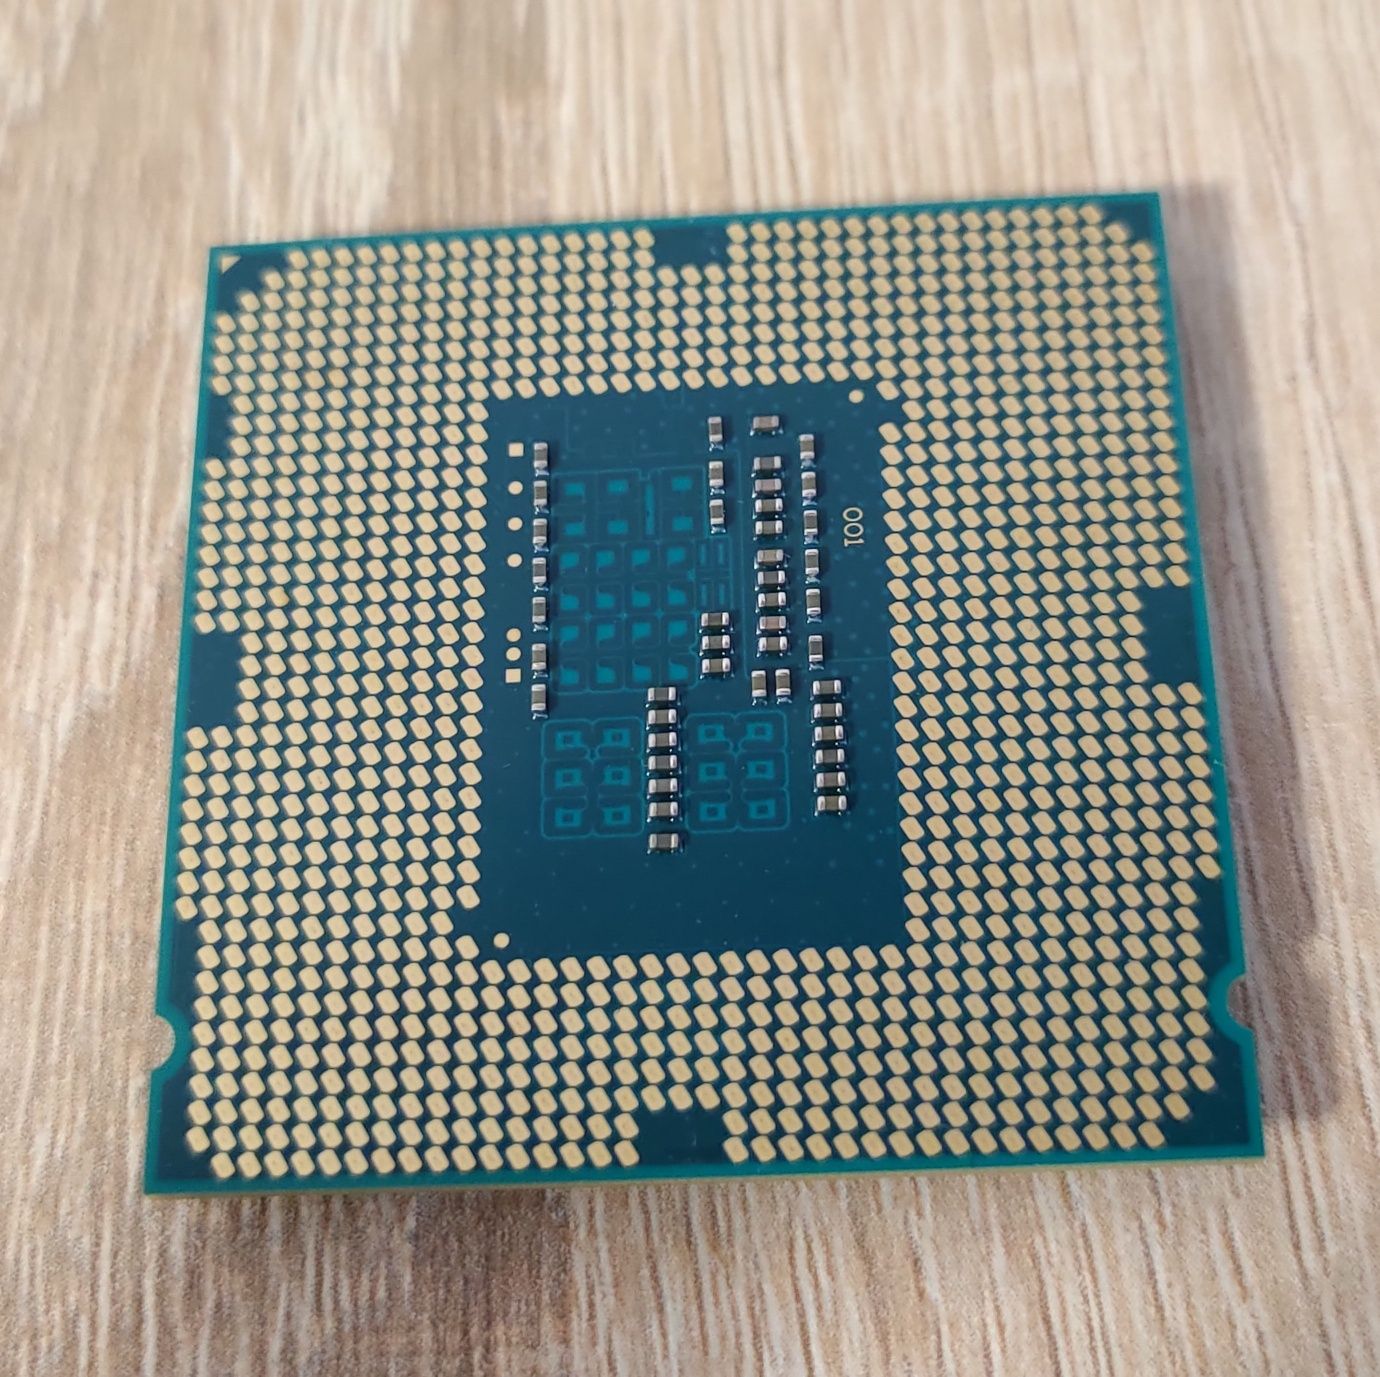 Procesor CPU Intel G3260 sprawny w 100% socket 1150